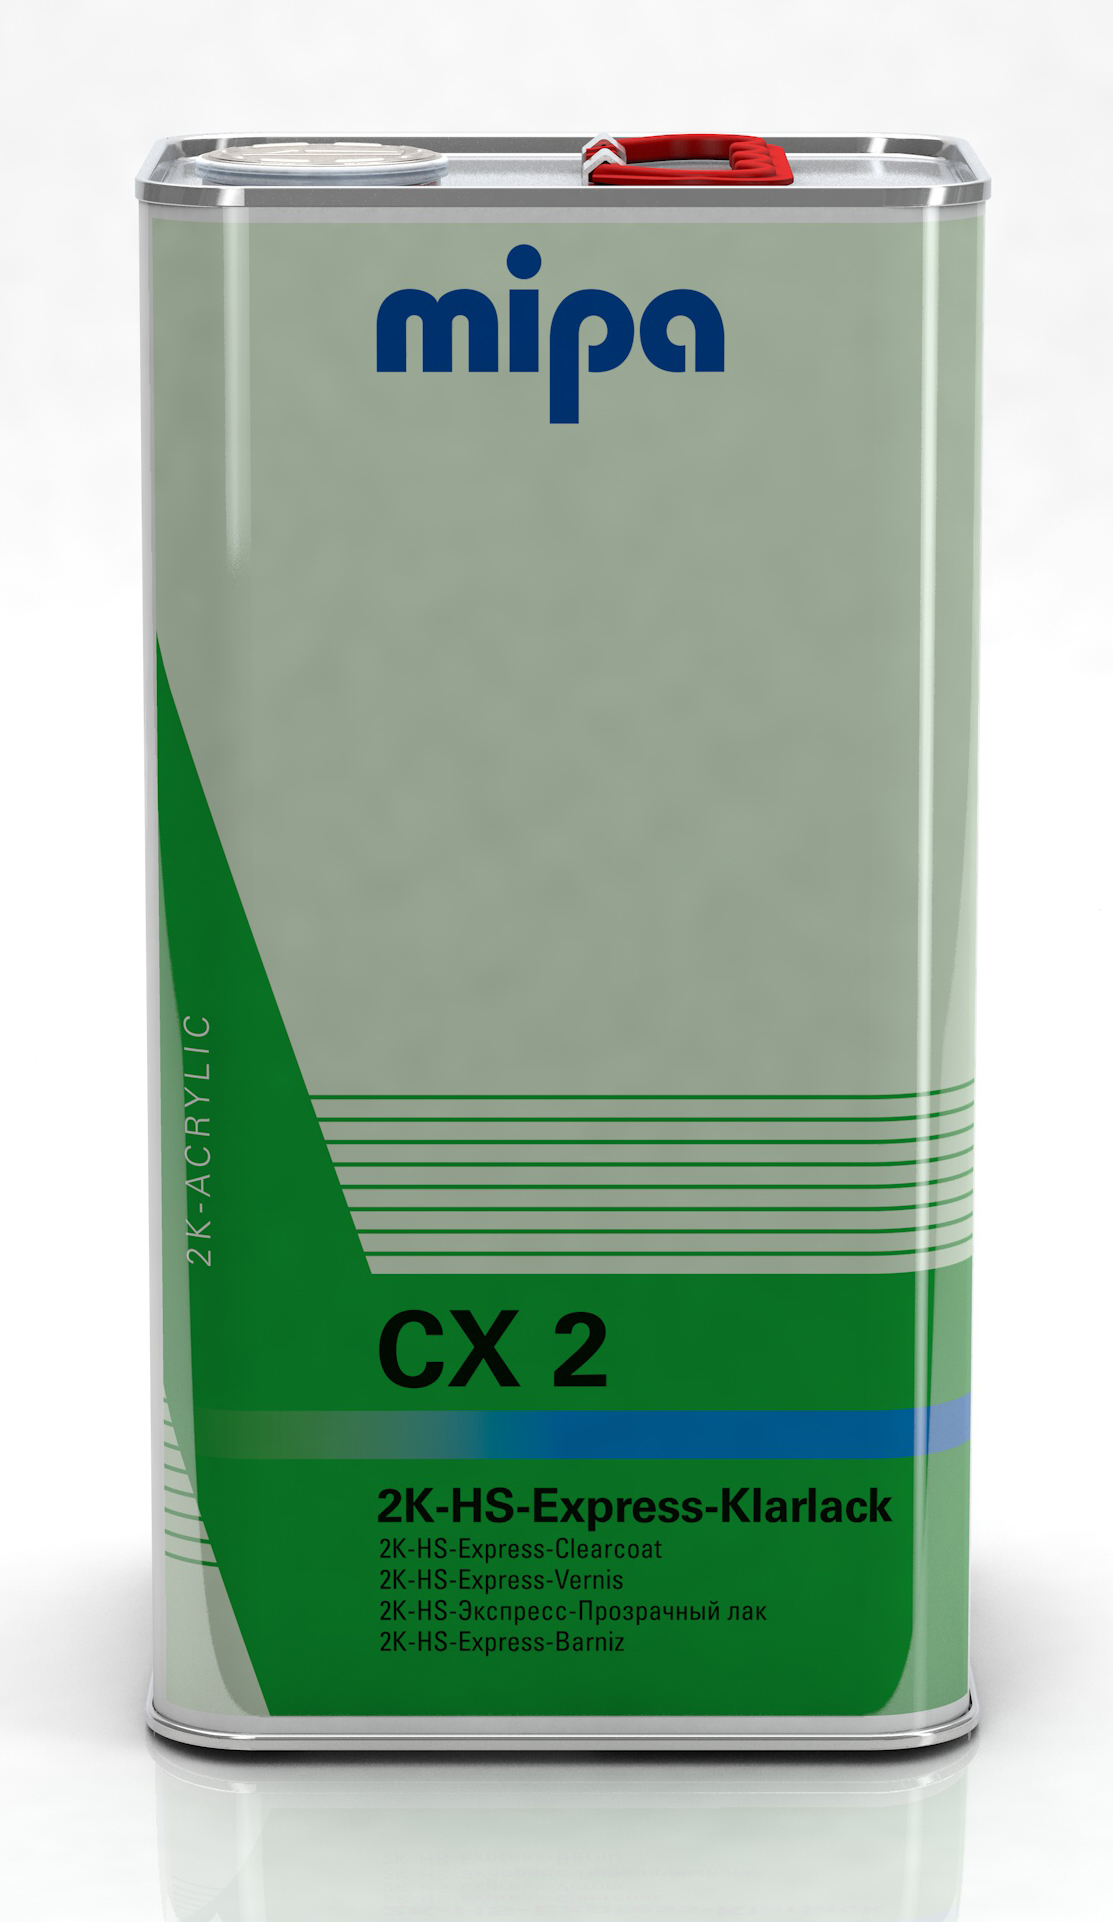 Mipa 2K-HS-Express-Klarlack 5l